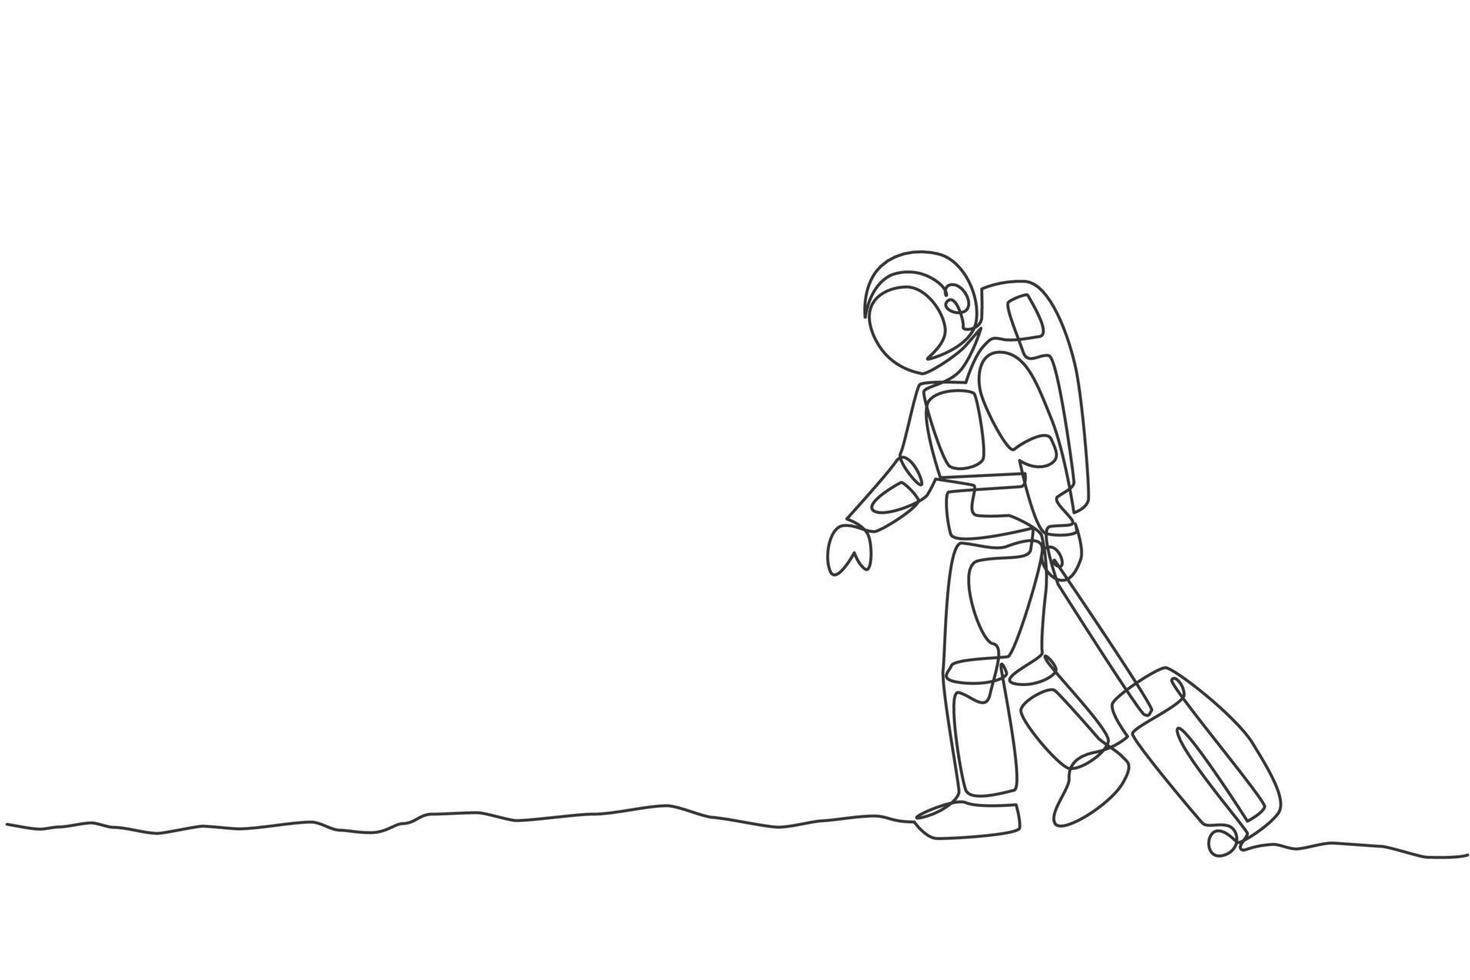 Dibujo de línea continua única joven astronauta tirando de la maleta mientras sale del aeropuerto en la superficie de la luna. concepto de galaxia cósmica del hombre del espacio. Ilustración de vector gráfico de diseño de dibujo de una línea de moda